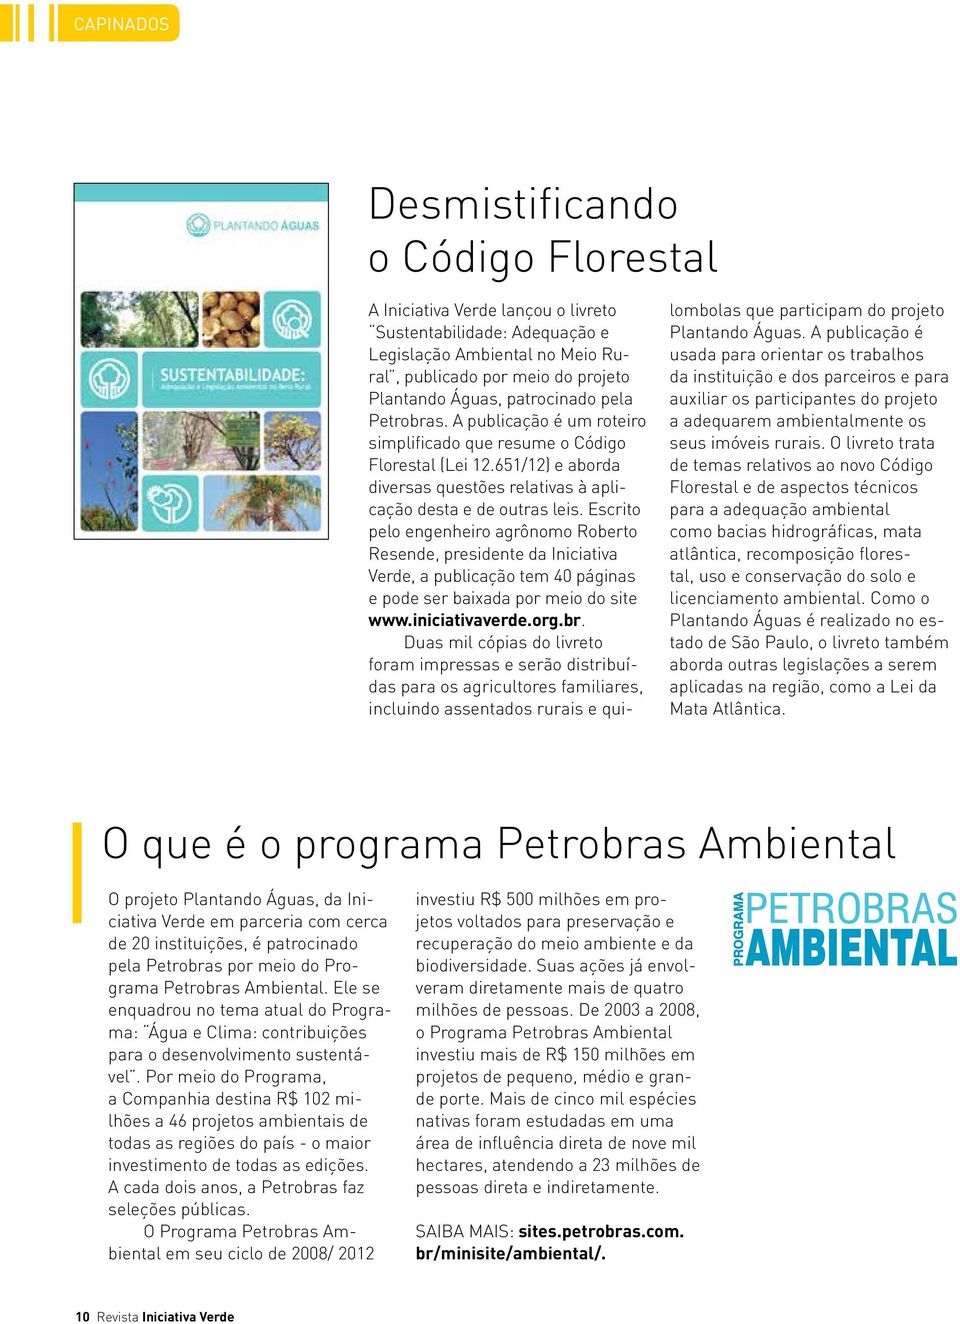 Escrito pelo engenheiro agrônomo Roberto Resende, presidente da Iniciativa Verde, a publicação tem 40 páginas e pode ser baixada por meio do site www.iniciativaverde.org.br.